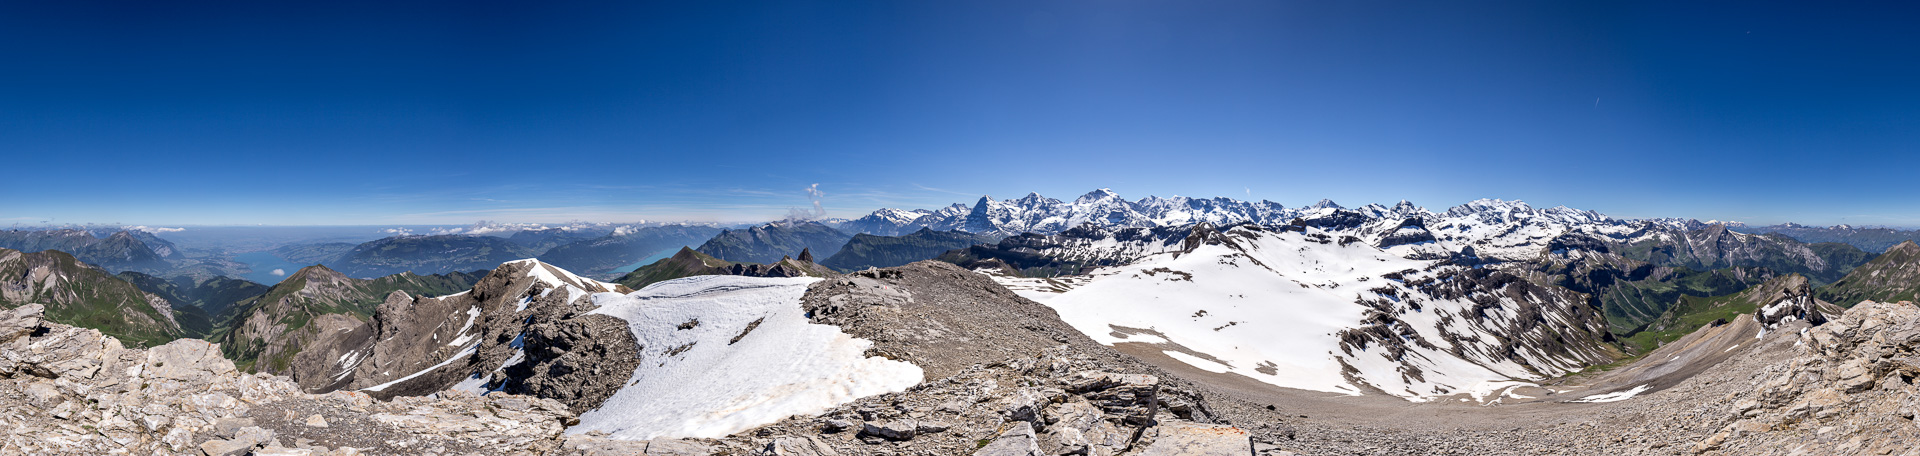 Das ganze Berner Oberland mitsamt Thuner See und Brienzer See stellt sich zur Schau! - Mit Link zu mountainpanoramas